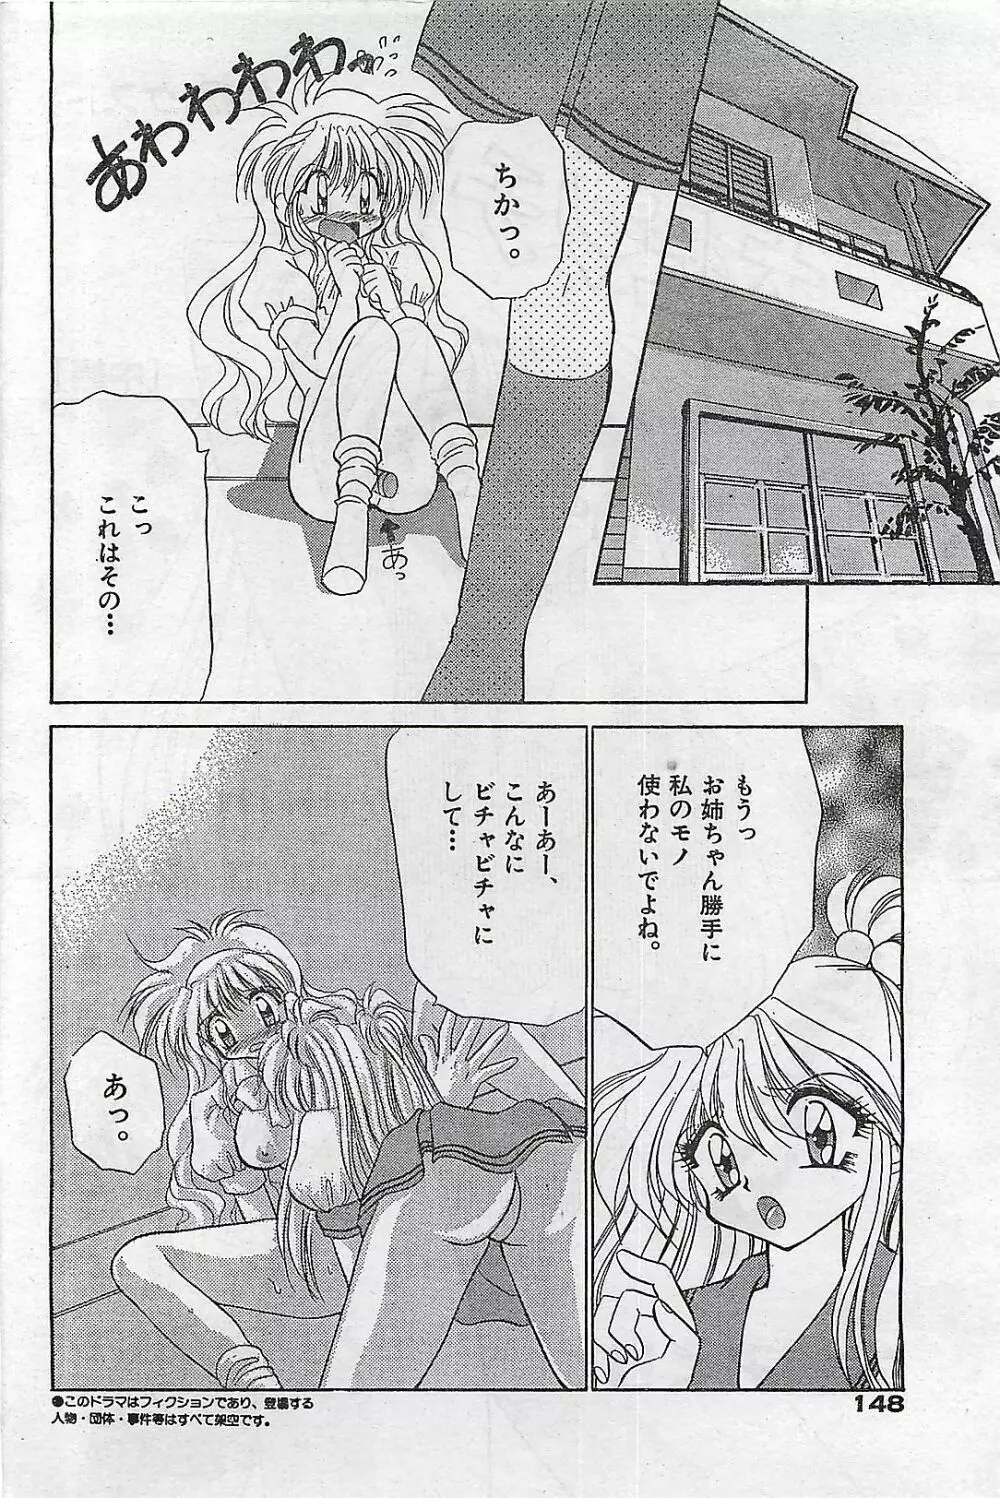 COMIC ゆみちゃん No.2 1995年08月号 148ページ